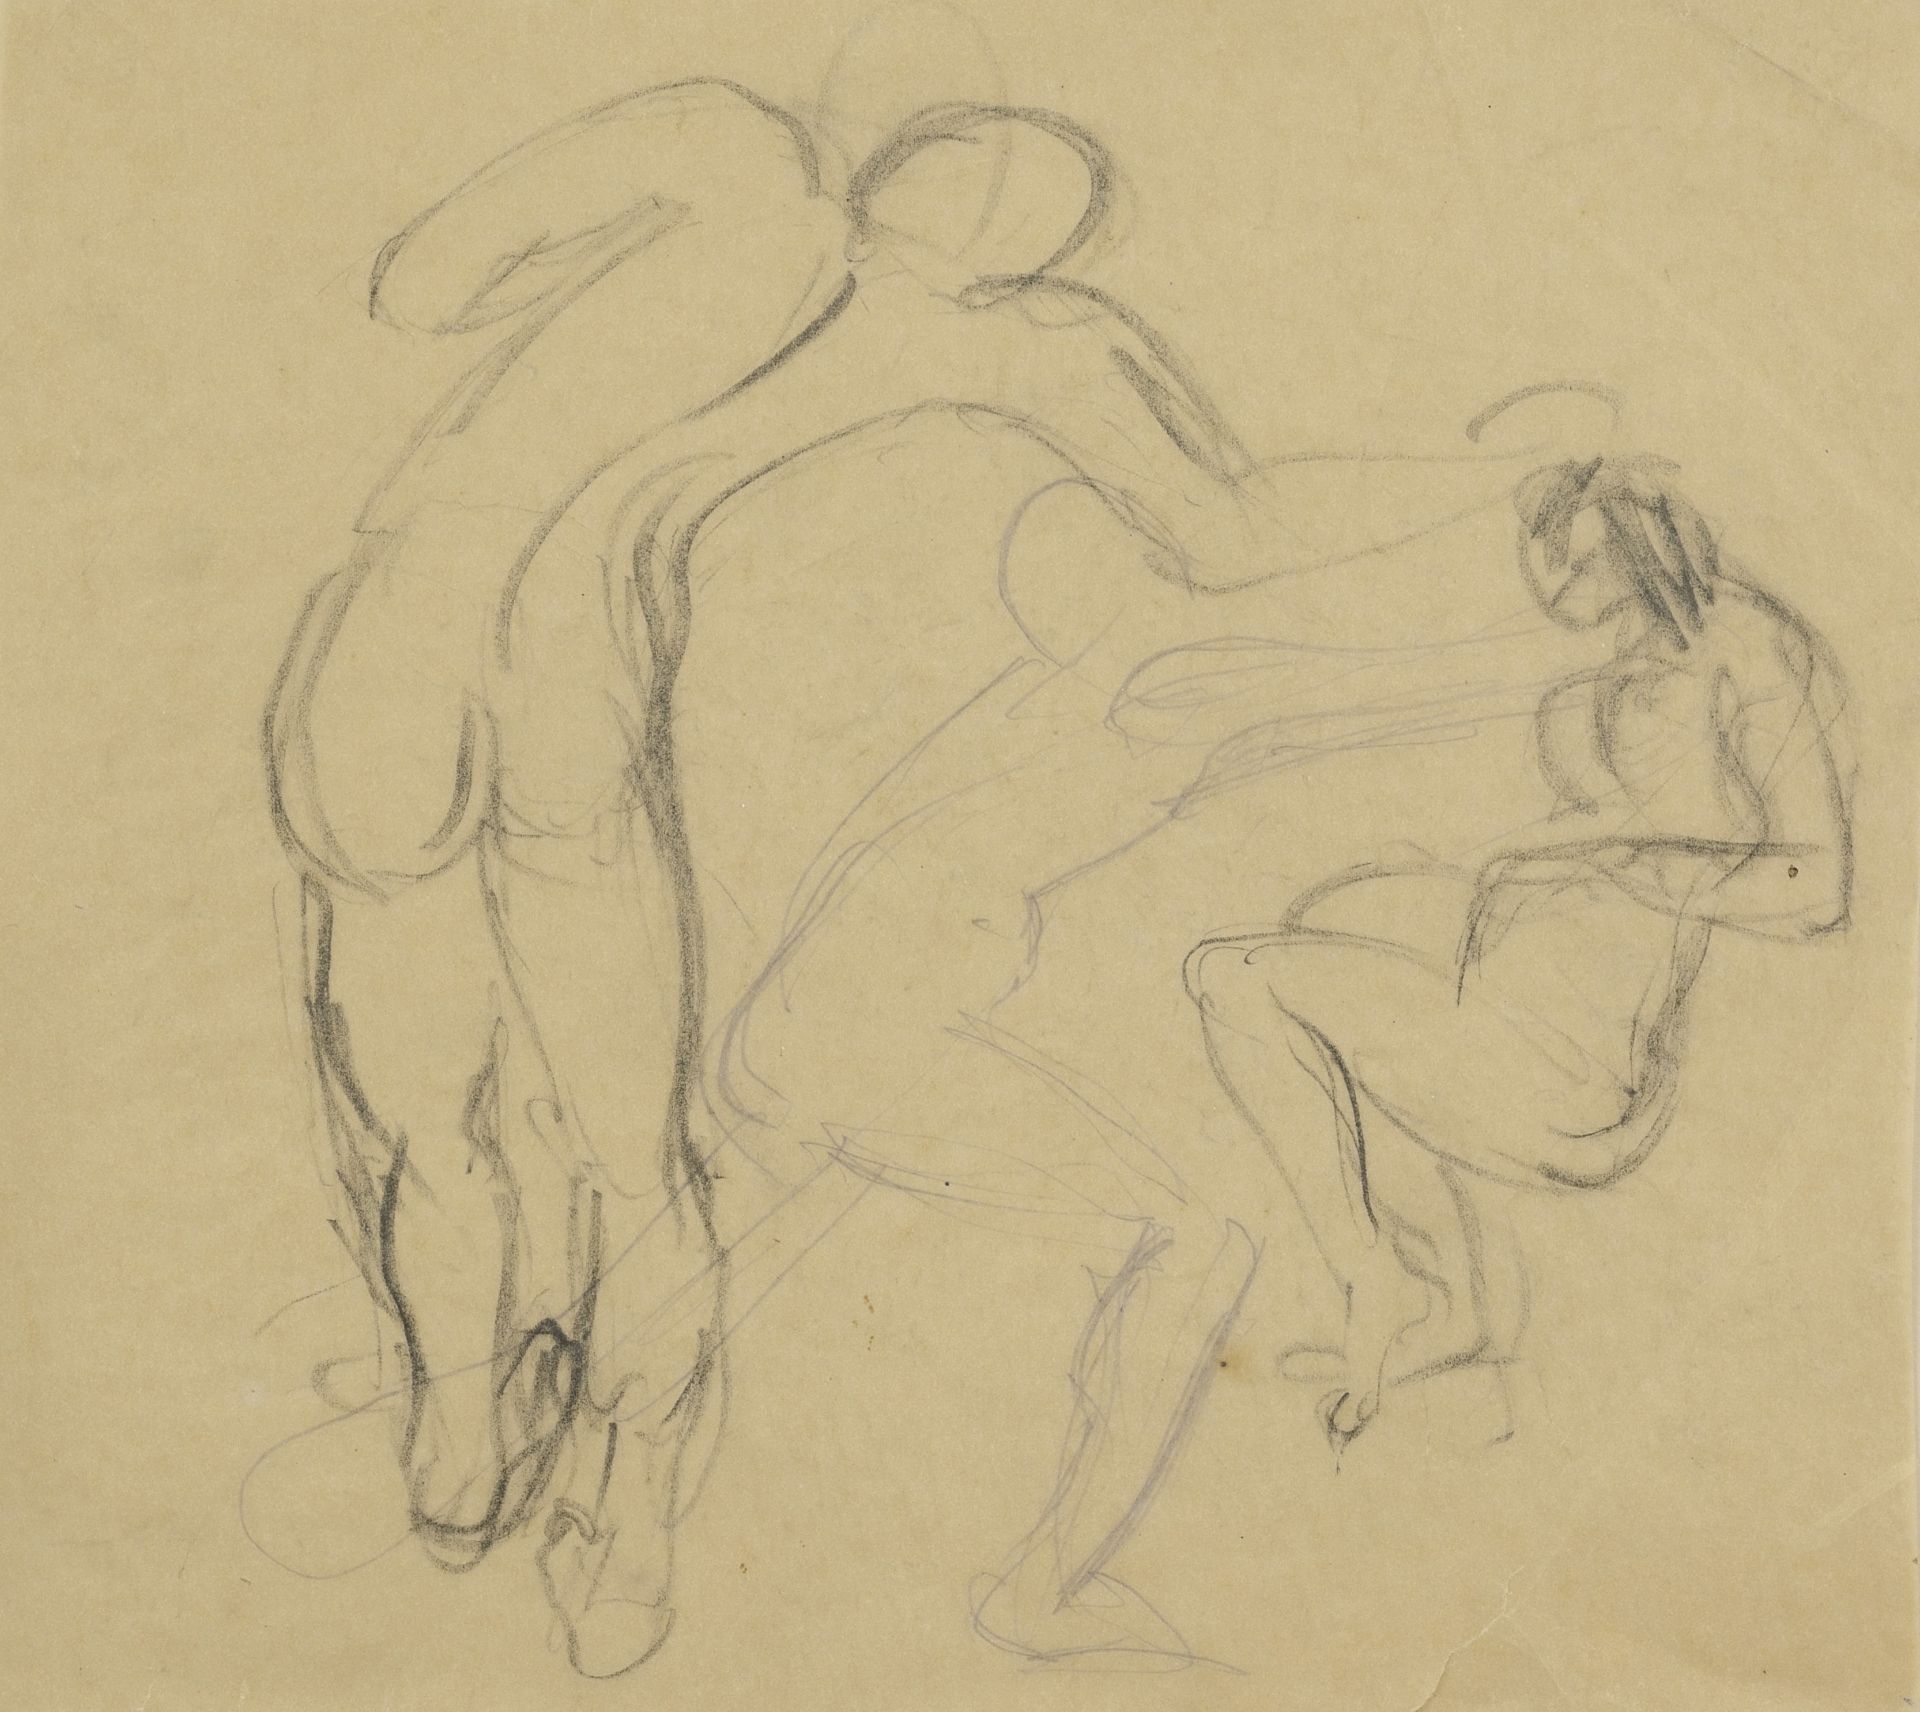 Ivan Milev Lalev /1897-1927/    "Sketches" 1922-1924